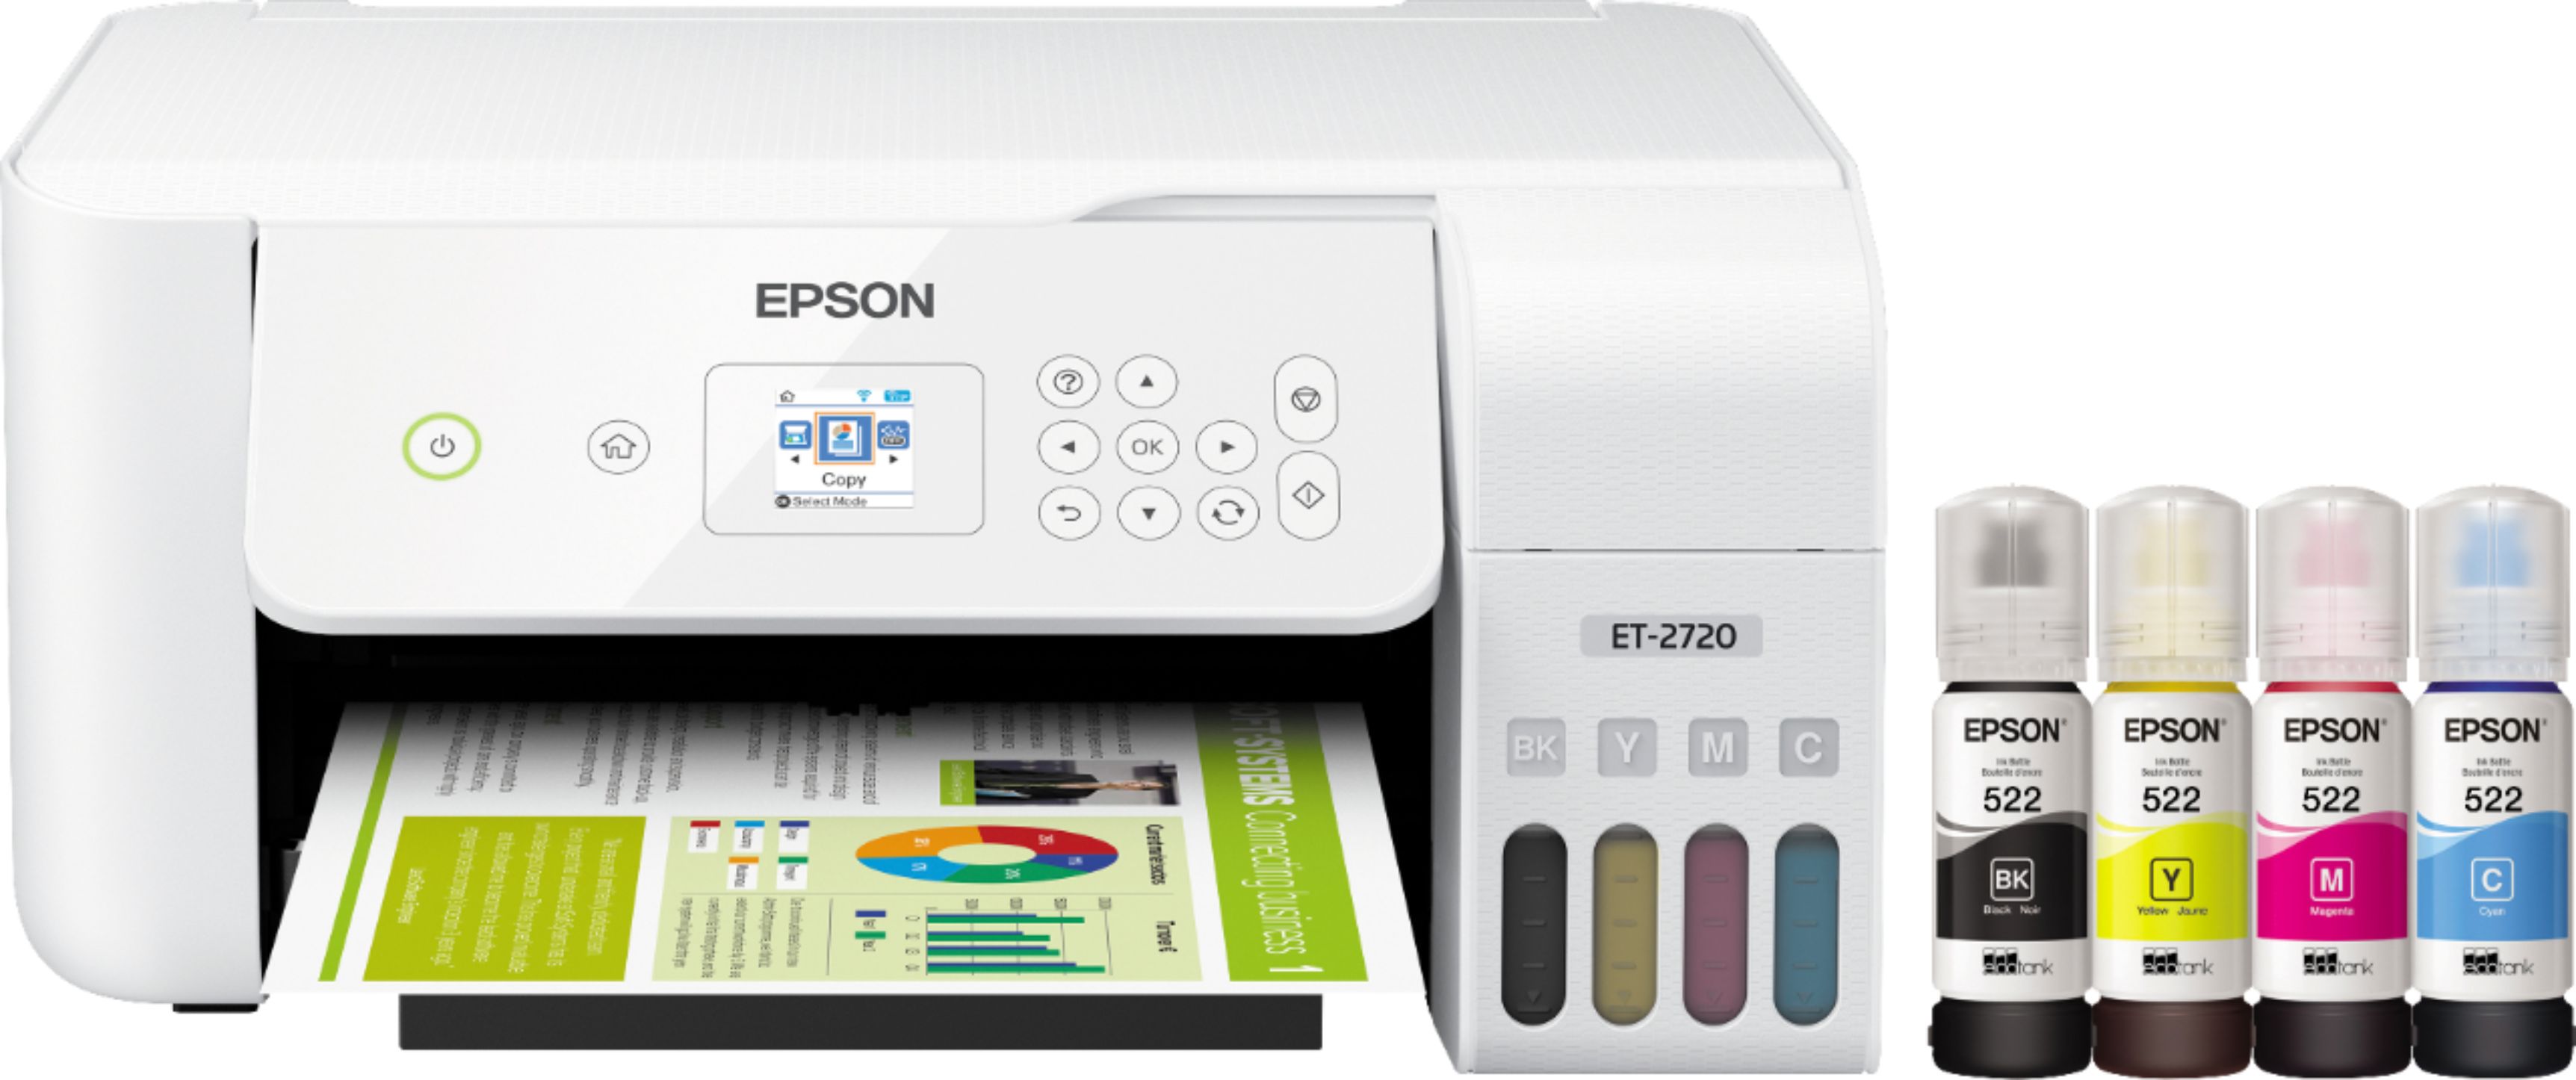 Epson EcoTank ET-2720 Wireless All-In-One Inkjet White ECOTANK ET-2720 PRINTER C11CH4 Buy